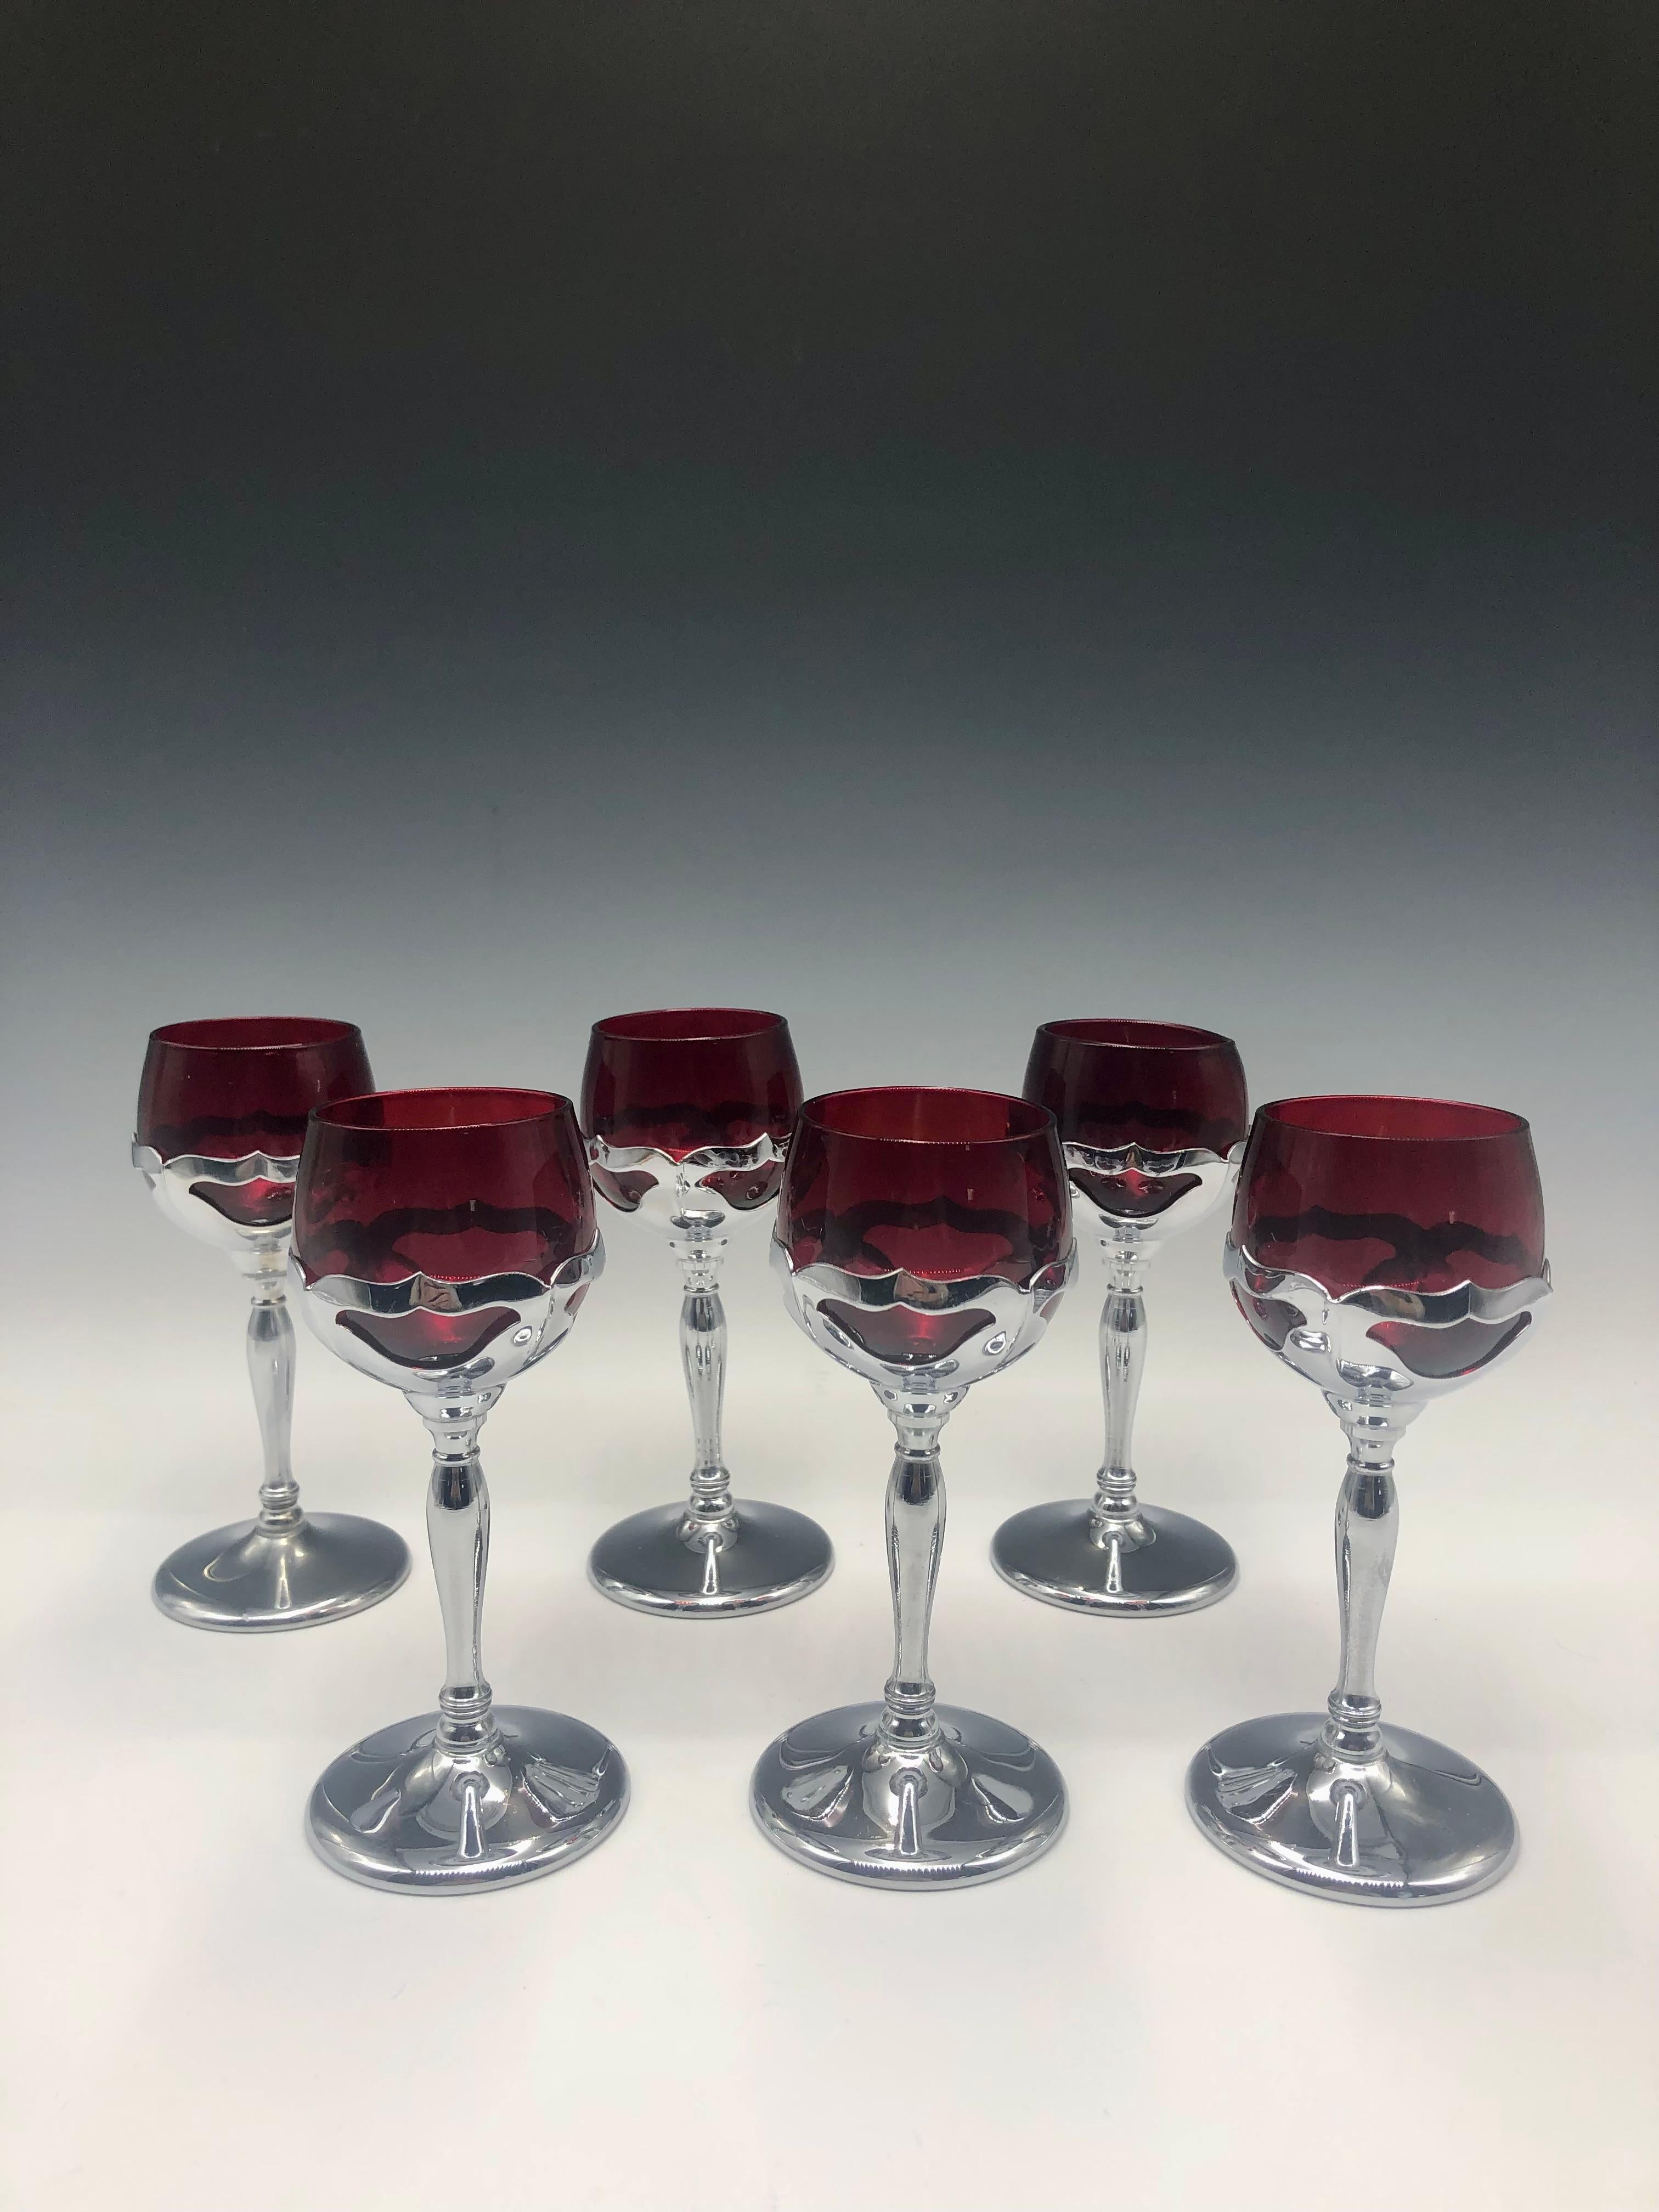 Elegant ensemble de 6 verres à cocktail Farber Brothers des années 1940-1950, rouge rubis, avec des tiges chromées. 

Taille : 6